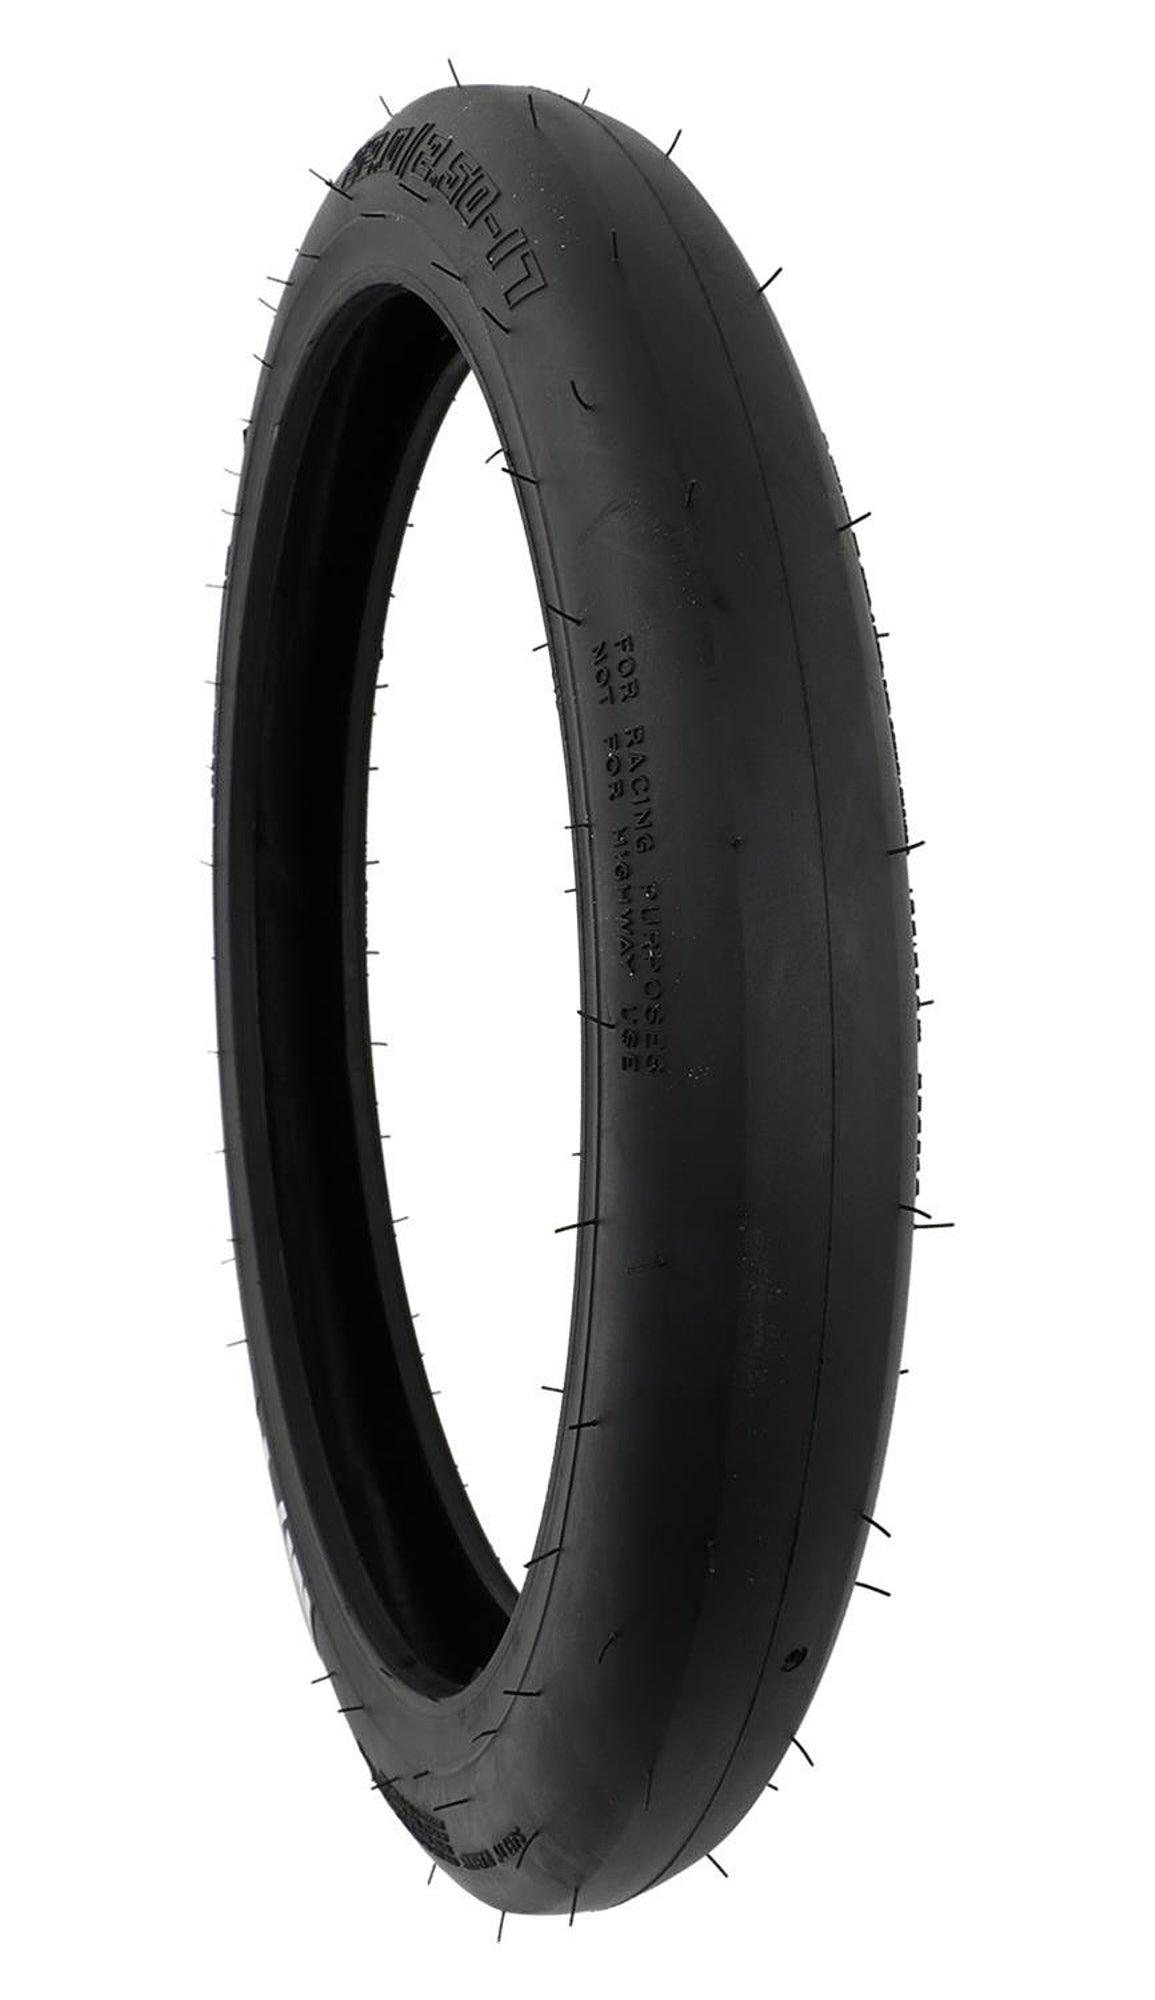 22.0/2.5-17 ET Drag Front Tire - Burlile Performance Products